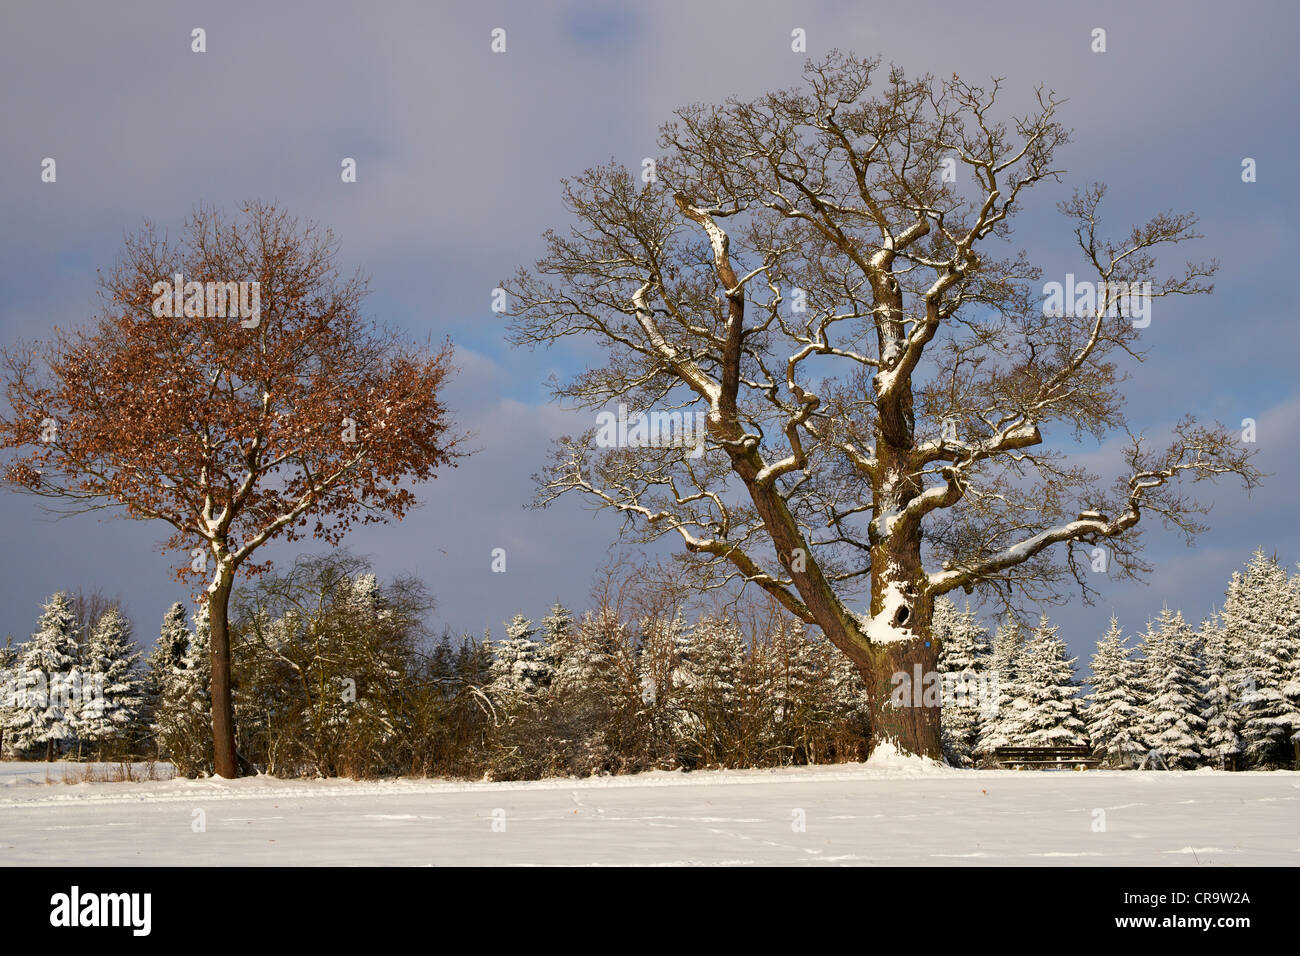 Old oak tree in winter Stock Photo